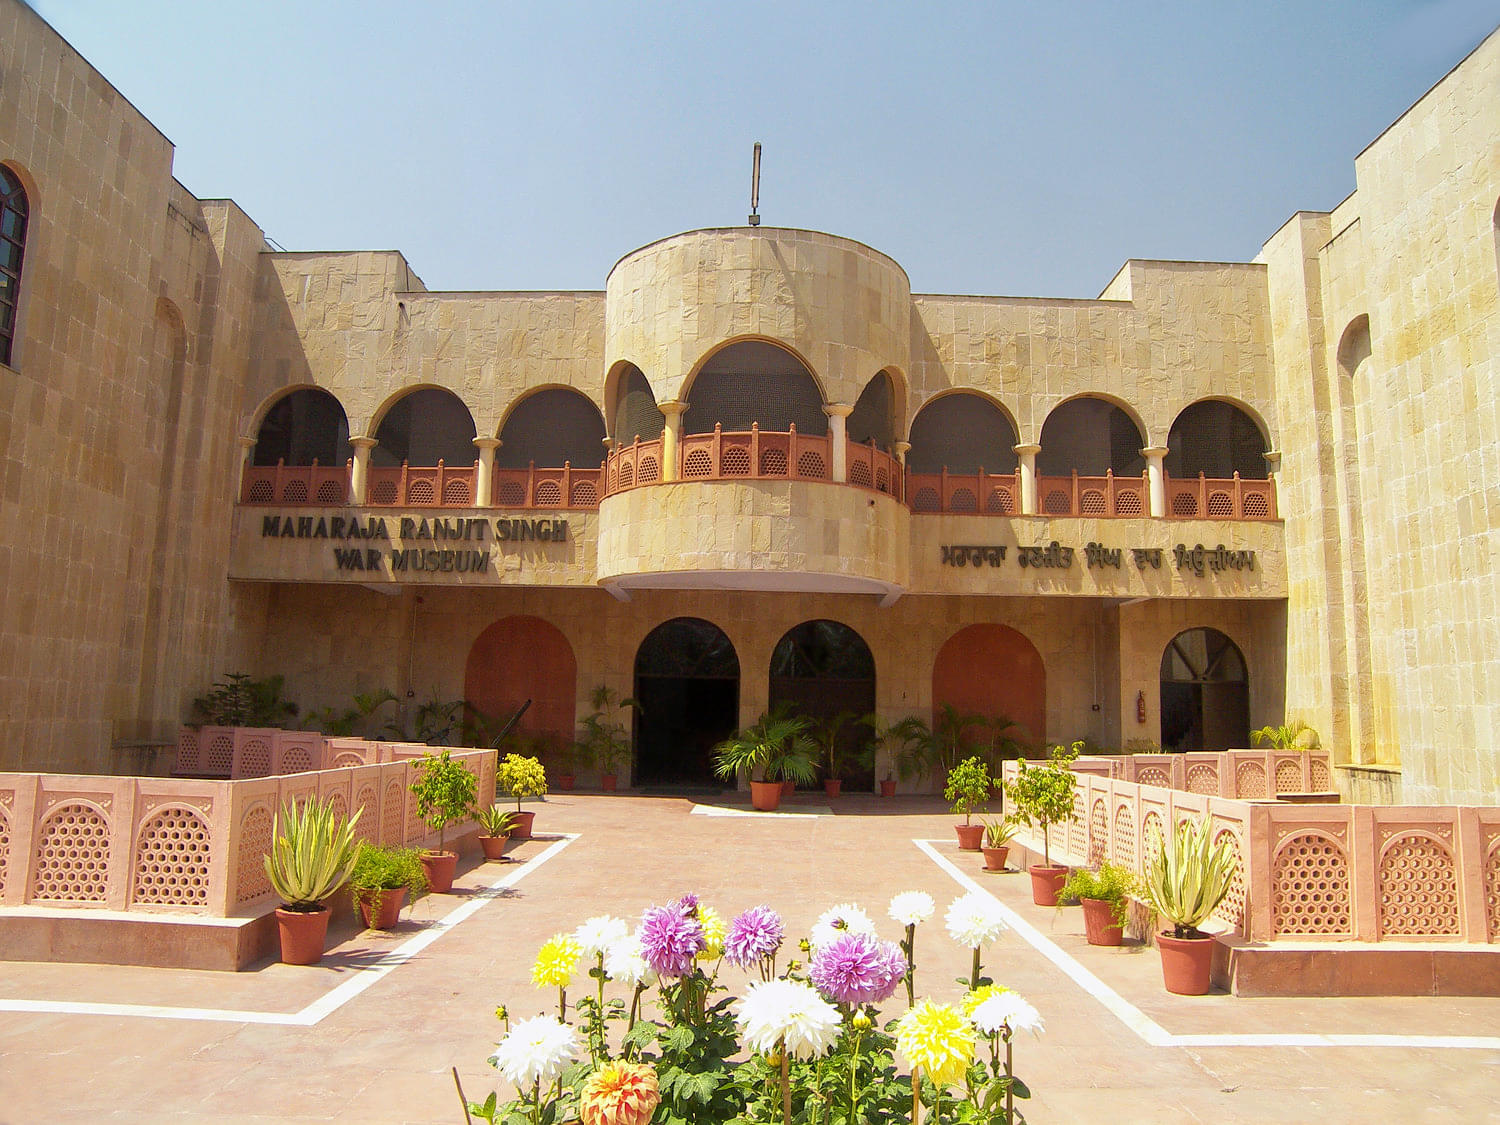 Maharaja Ranjit Singh Museum Overview